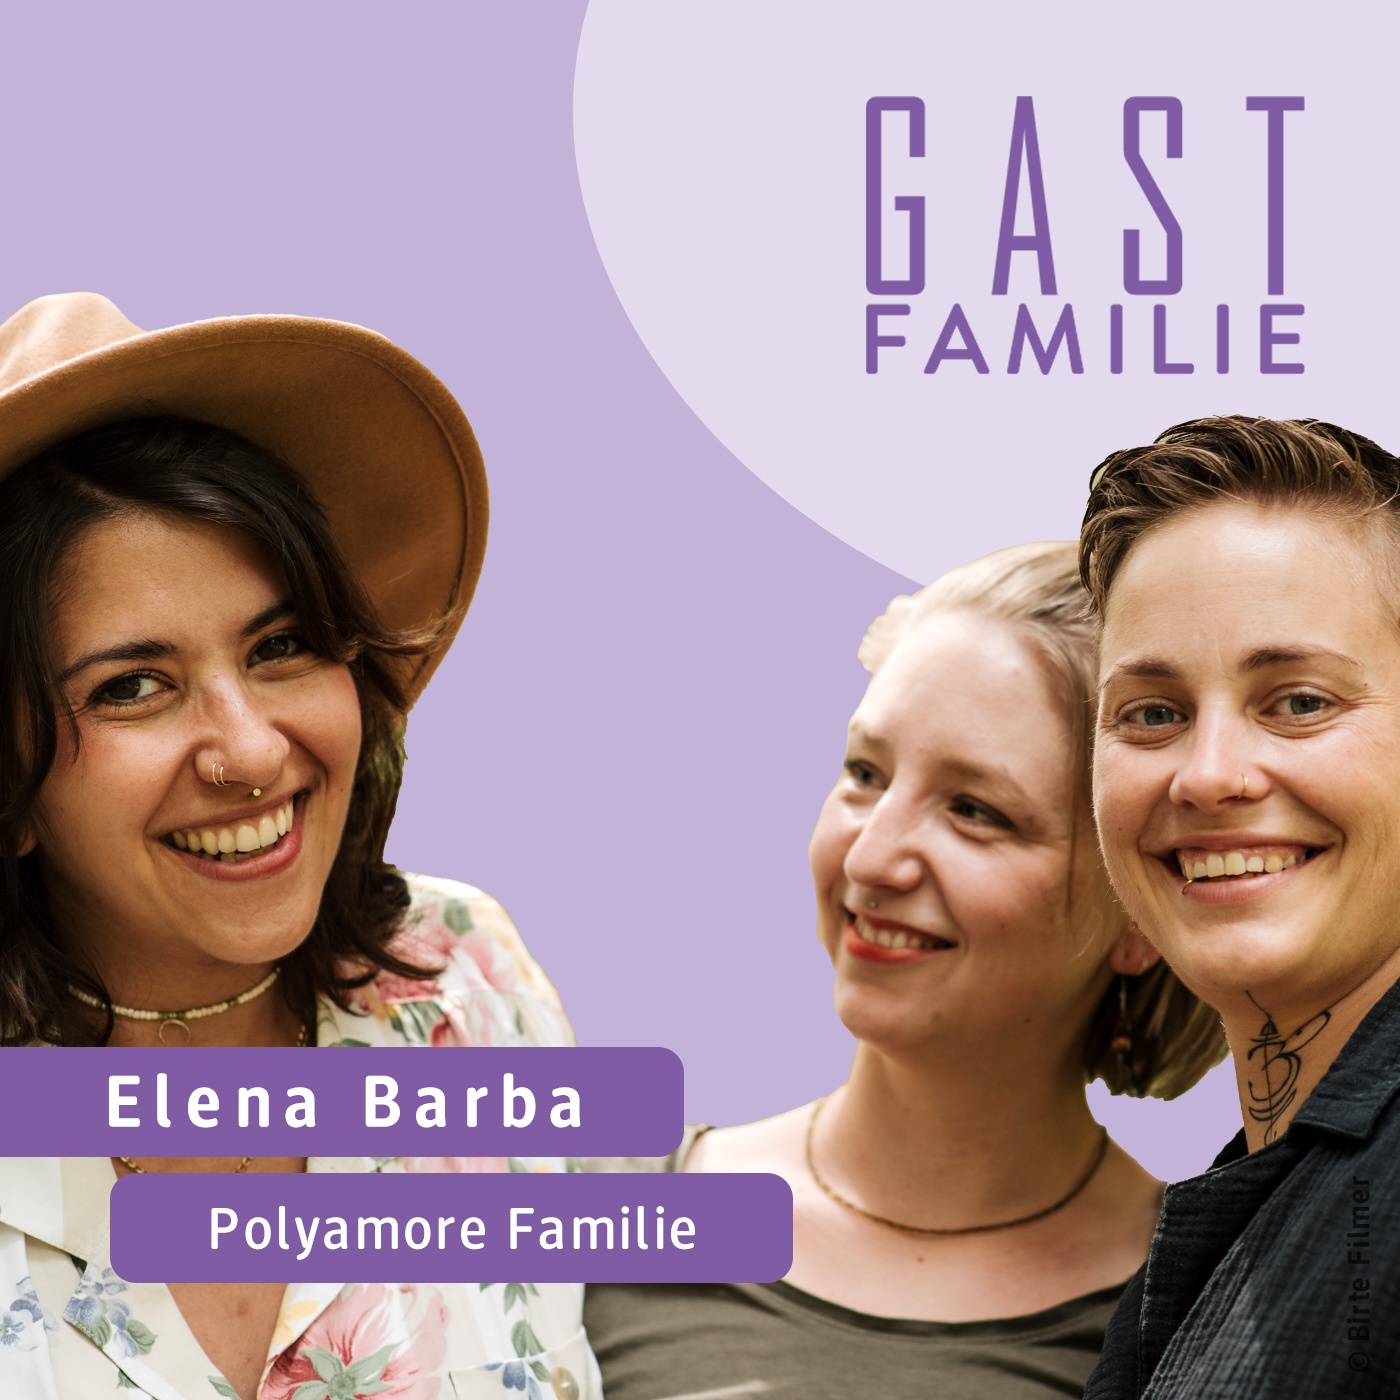 Wie lebt Ihr Eure polyamore Familie, Elena Barba?